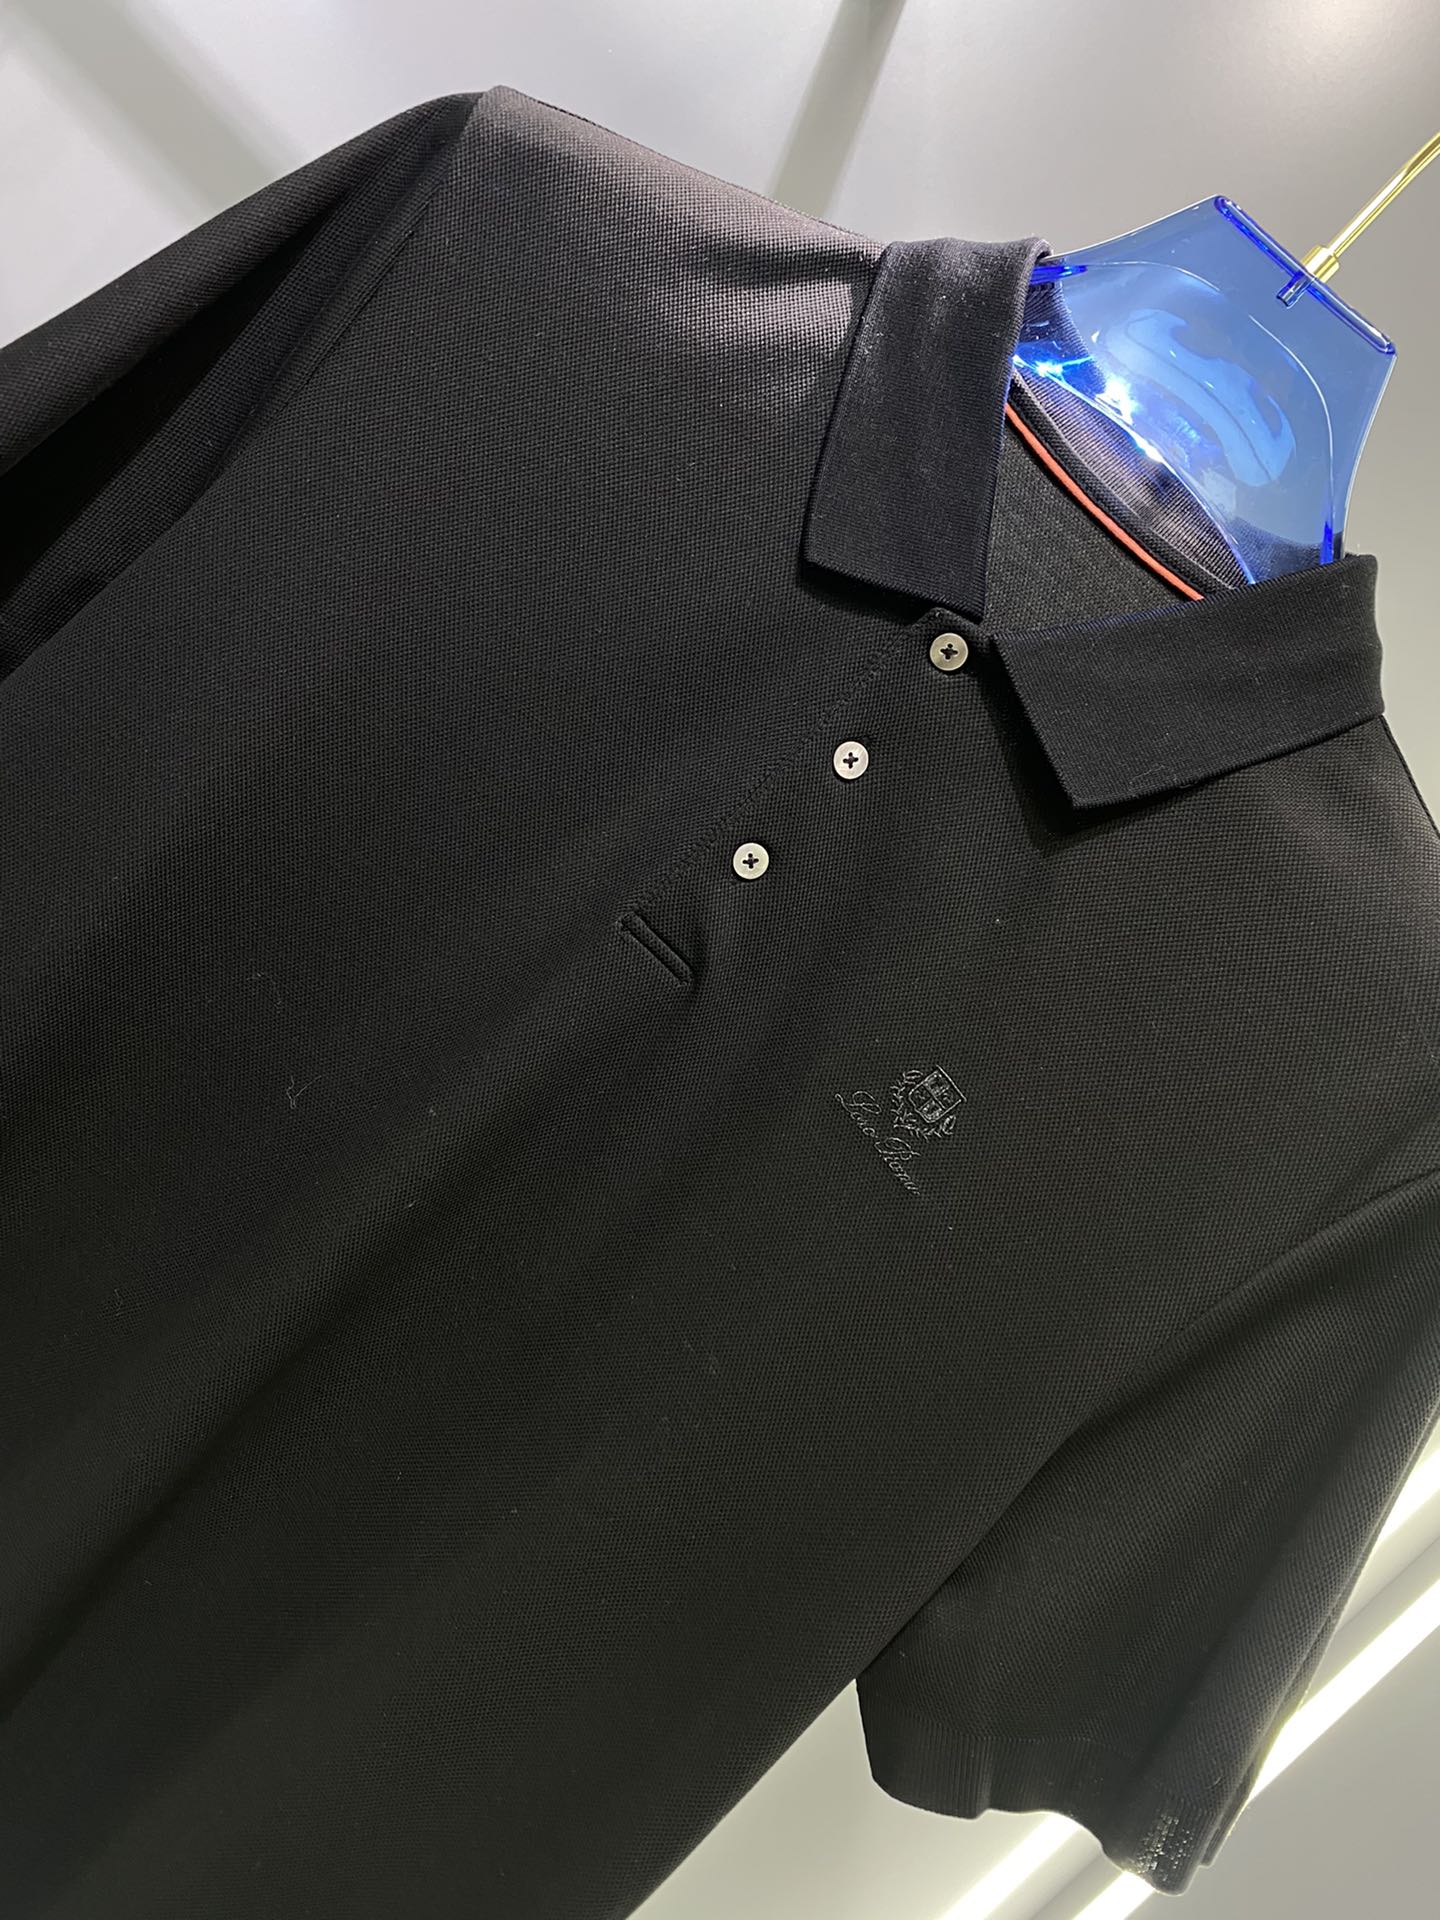 #LP夏季新款短袖T恤Polo客供定制珠地面料简单时尚款超级好看！简单大方的款式！满满的高级感四季可穿颜